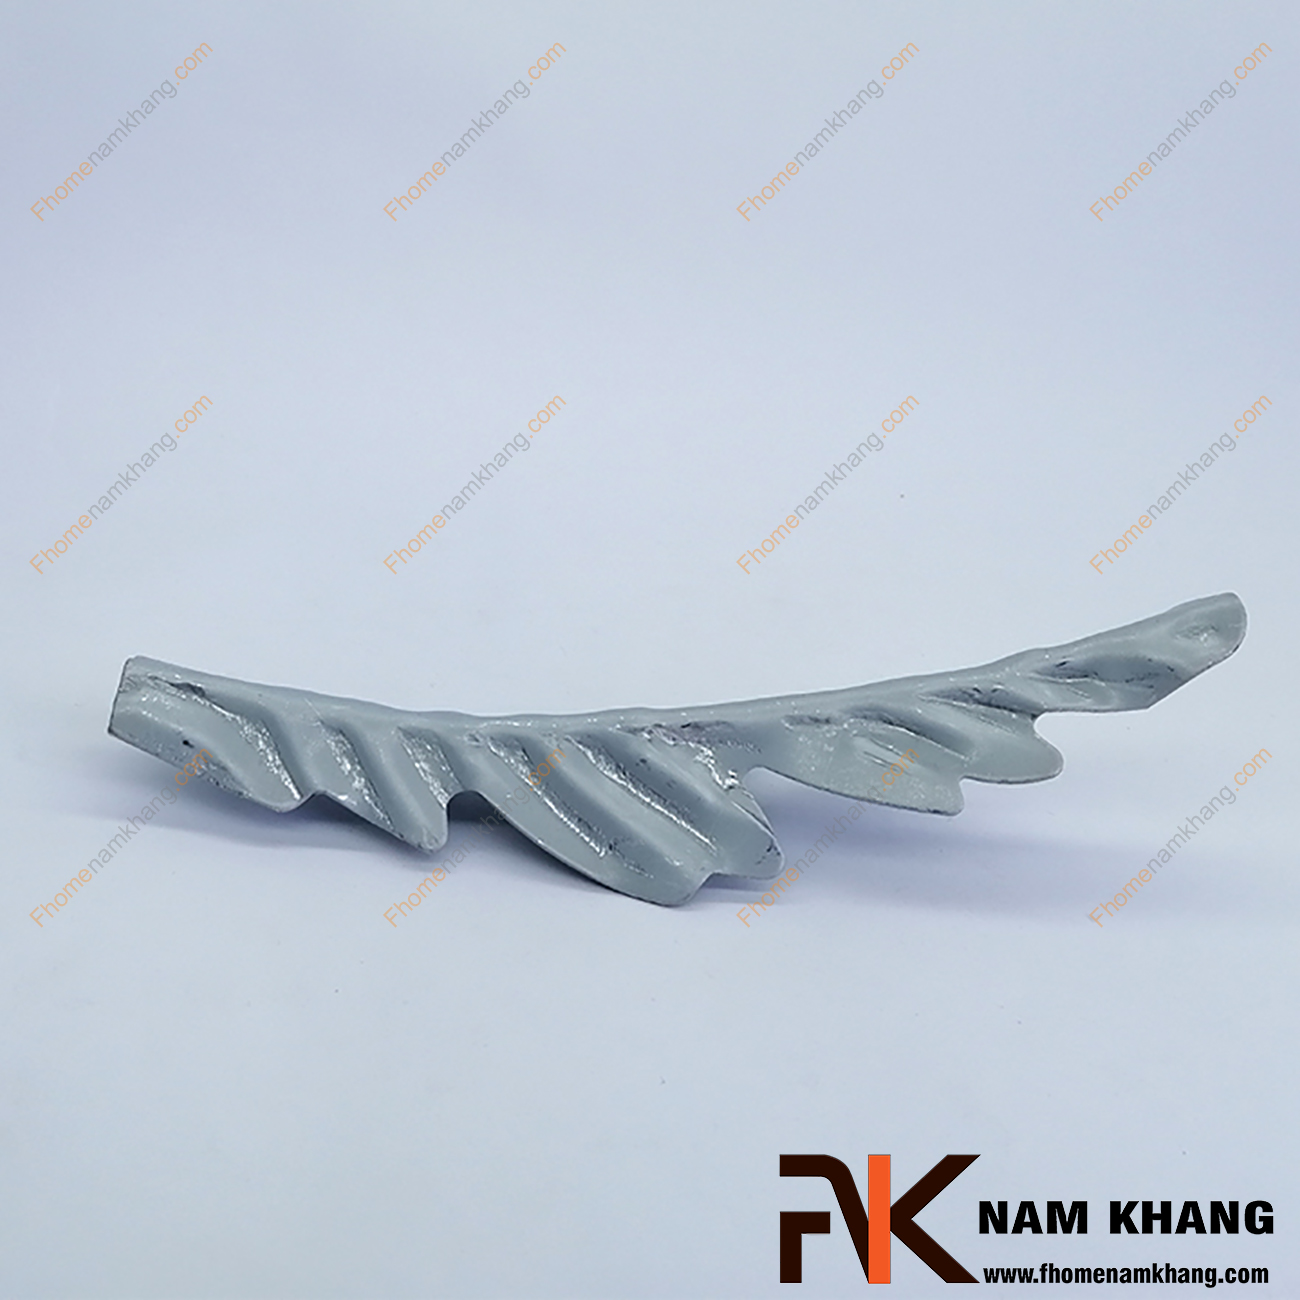 Lá thép dập hình lá dứa NKS-14 được sản xuất từ thép tấm có độ dày 1-2mm, có bề mặt láng mịn, hàn gắn dể dàng vào các chi tiết thép khác.